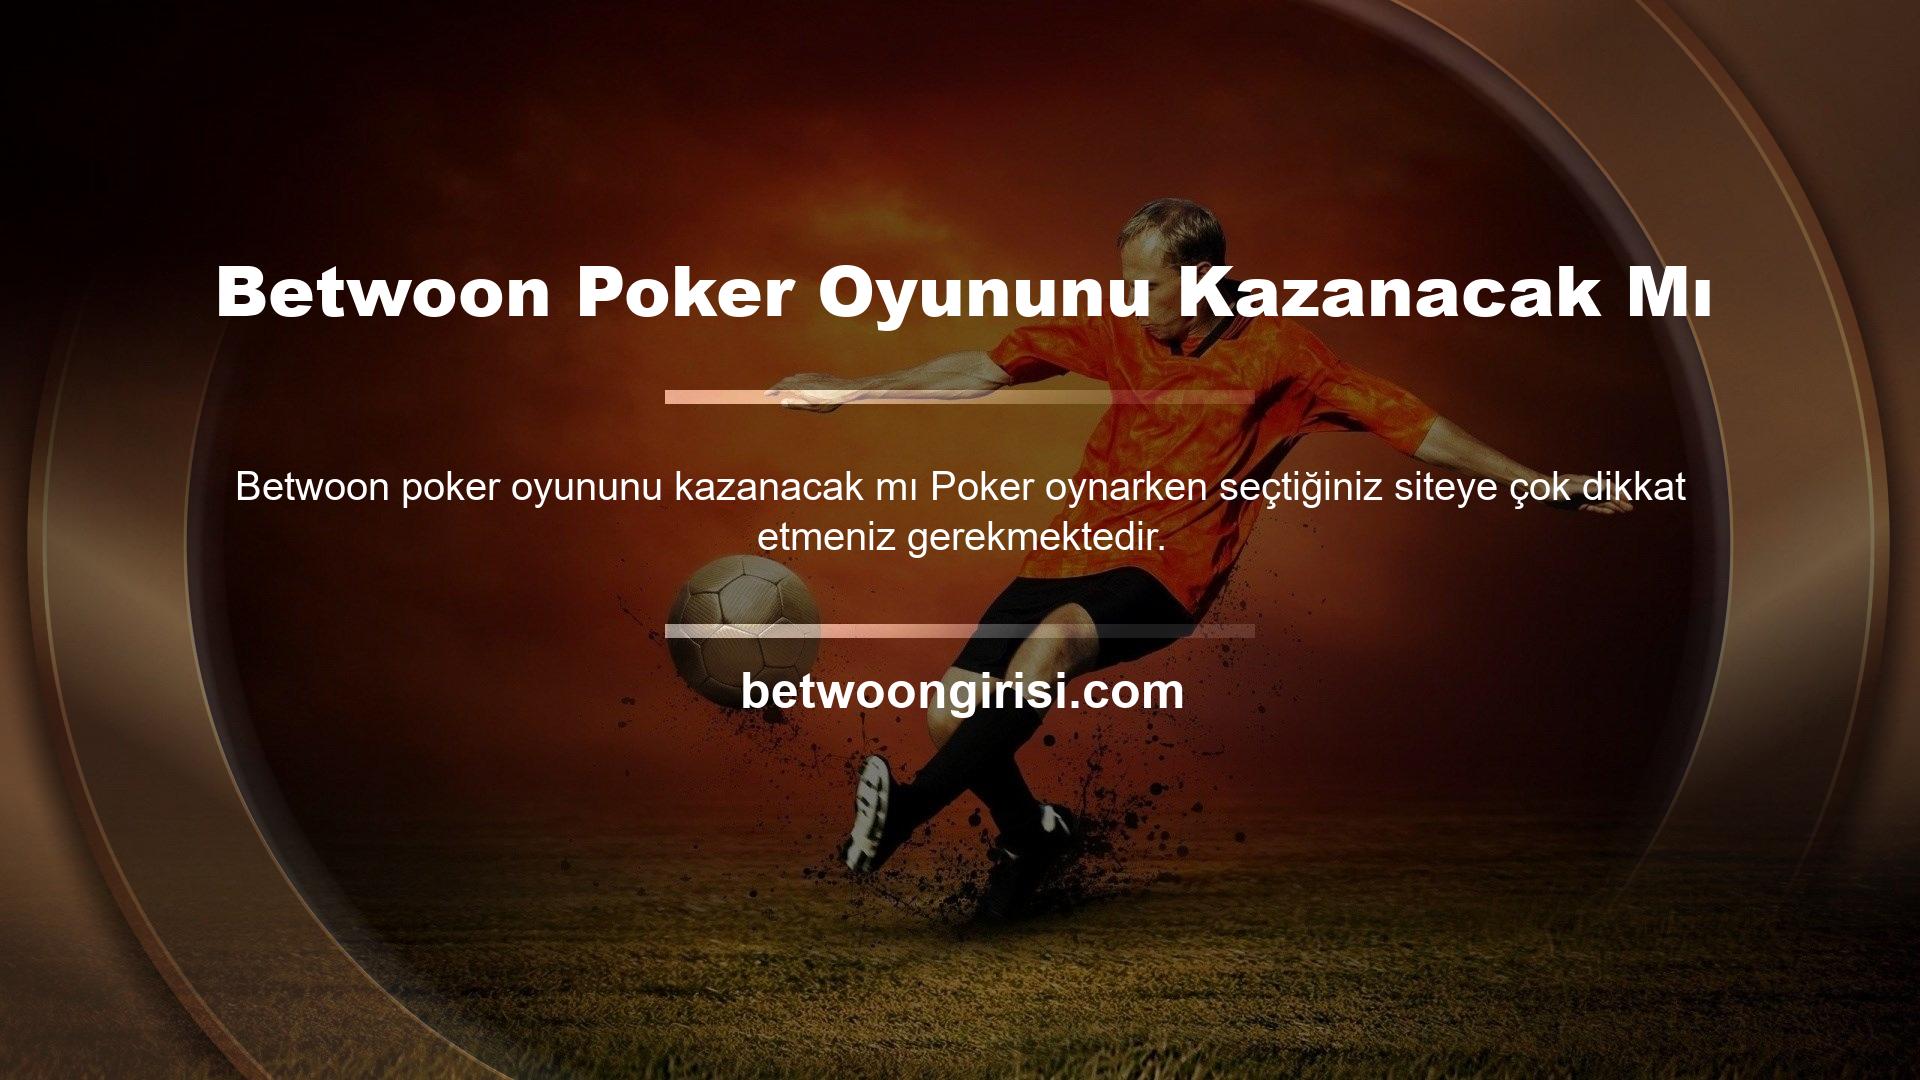 Bazı casino siteleri, kullanıcılarının bundan zevk almasını engelleyebilir